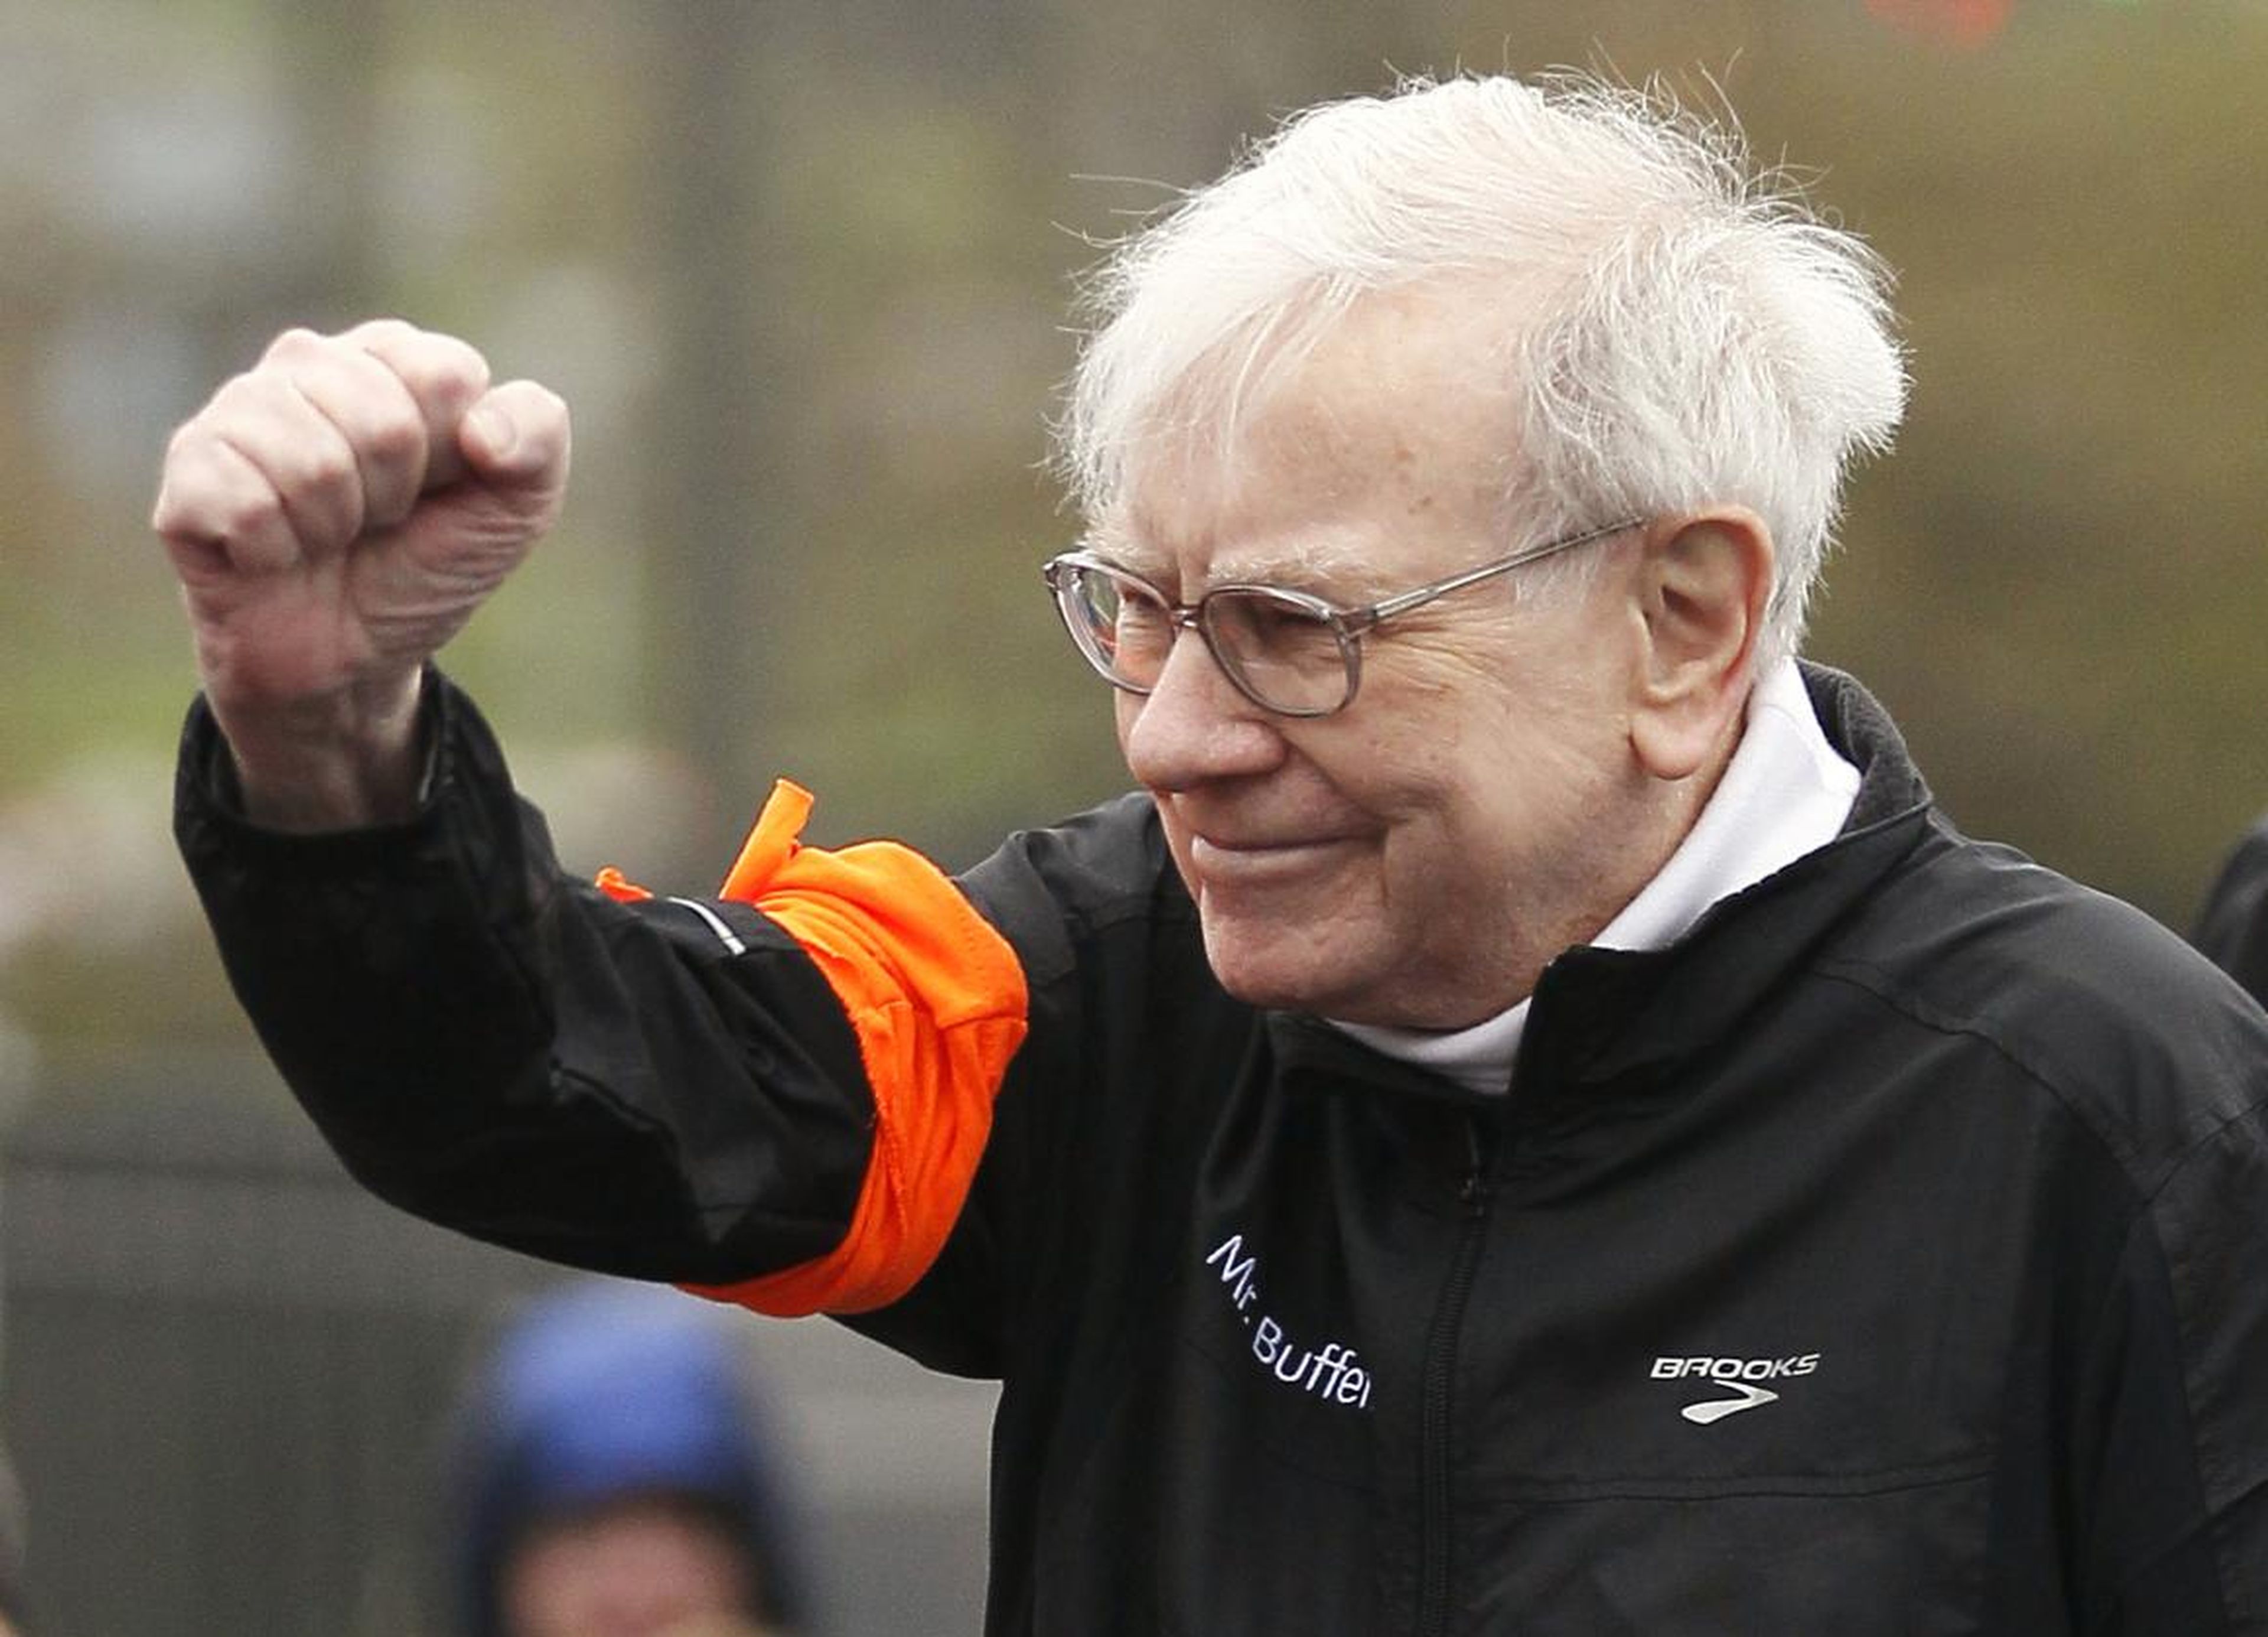 Berkshire Hathaway chairman Warren Buffett gestures at the start of a 5km race.